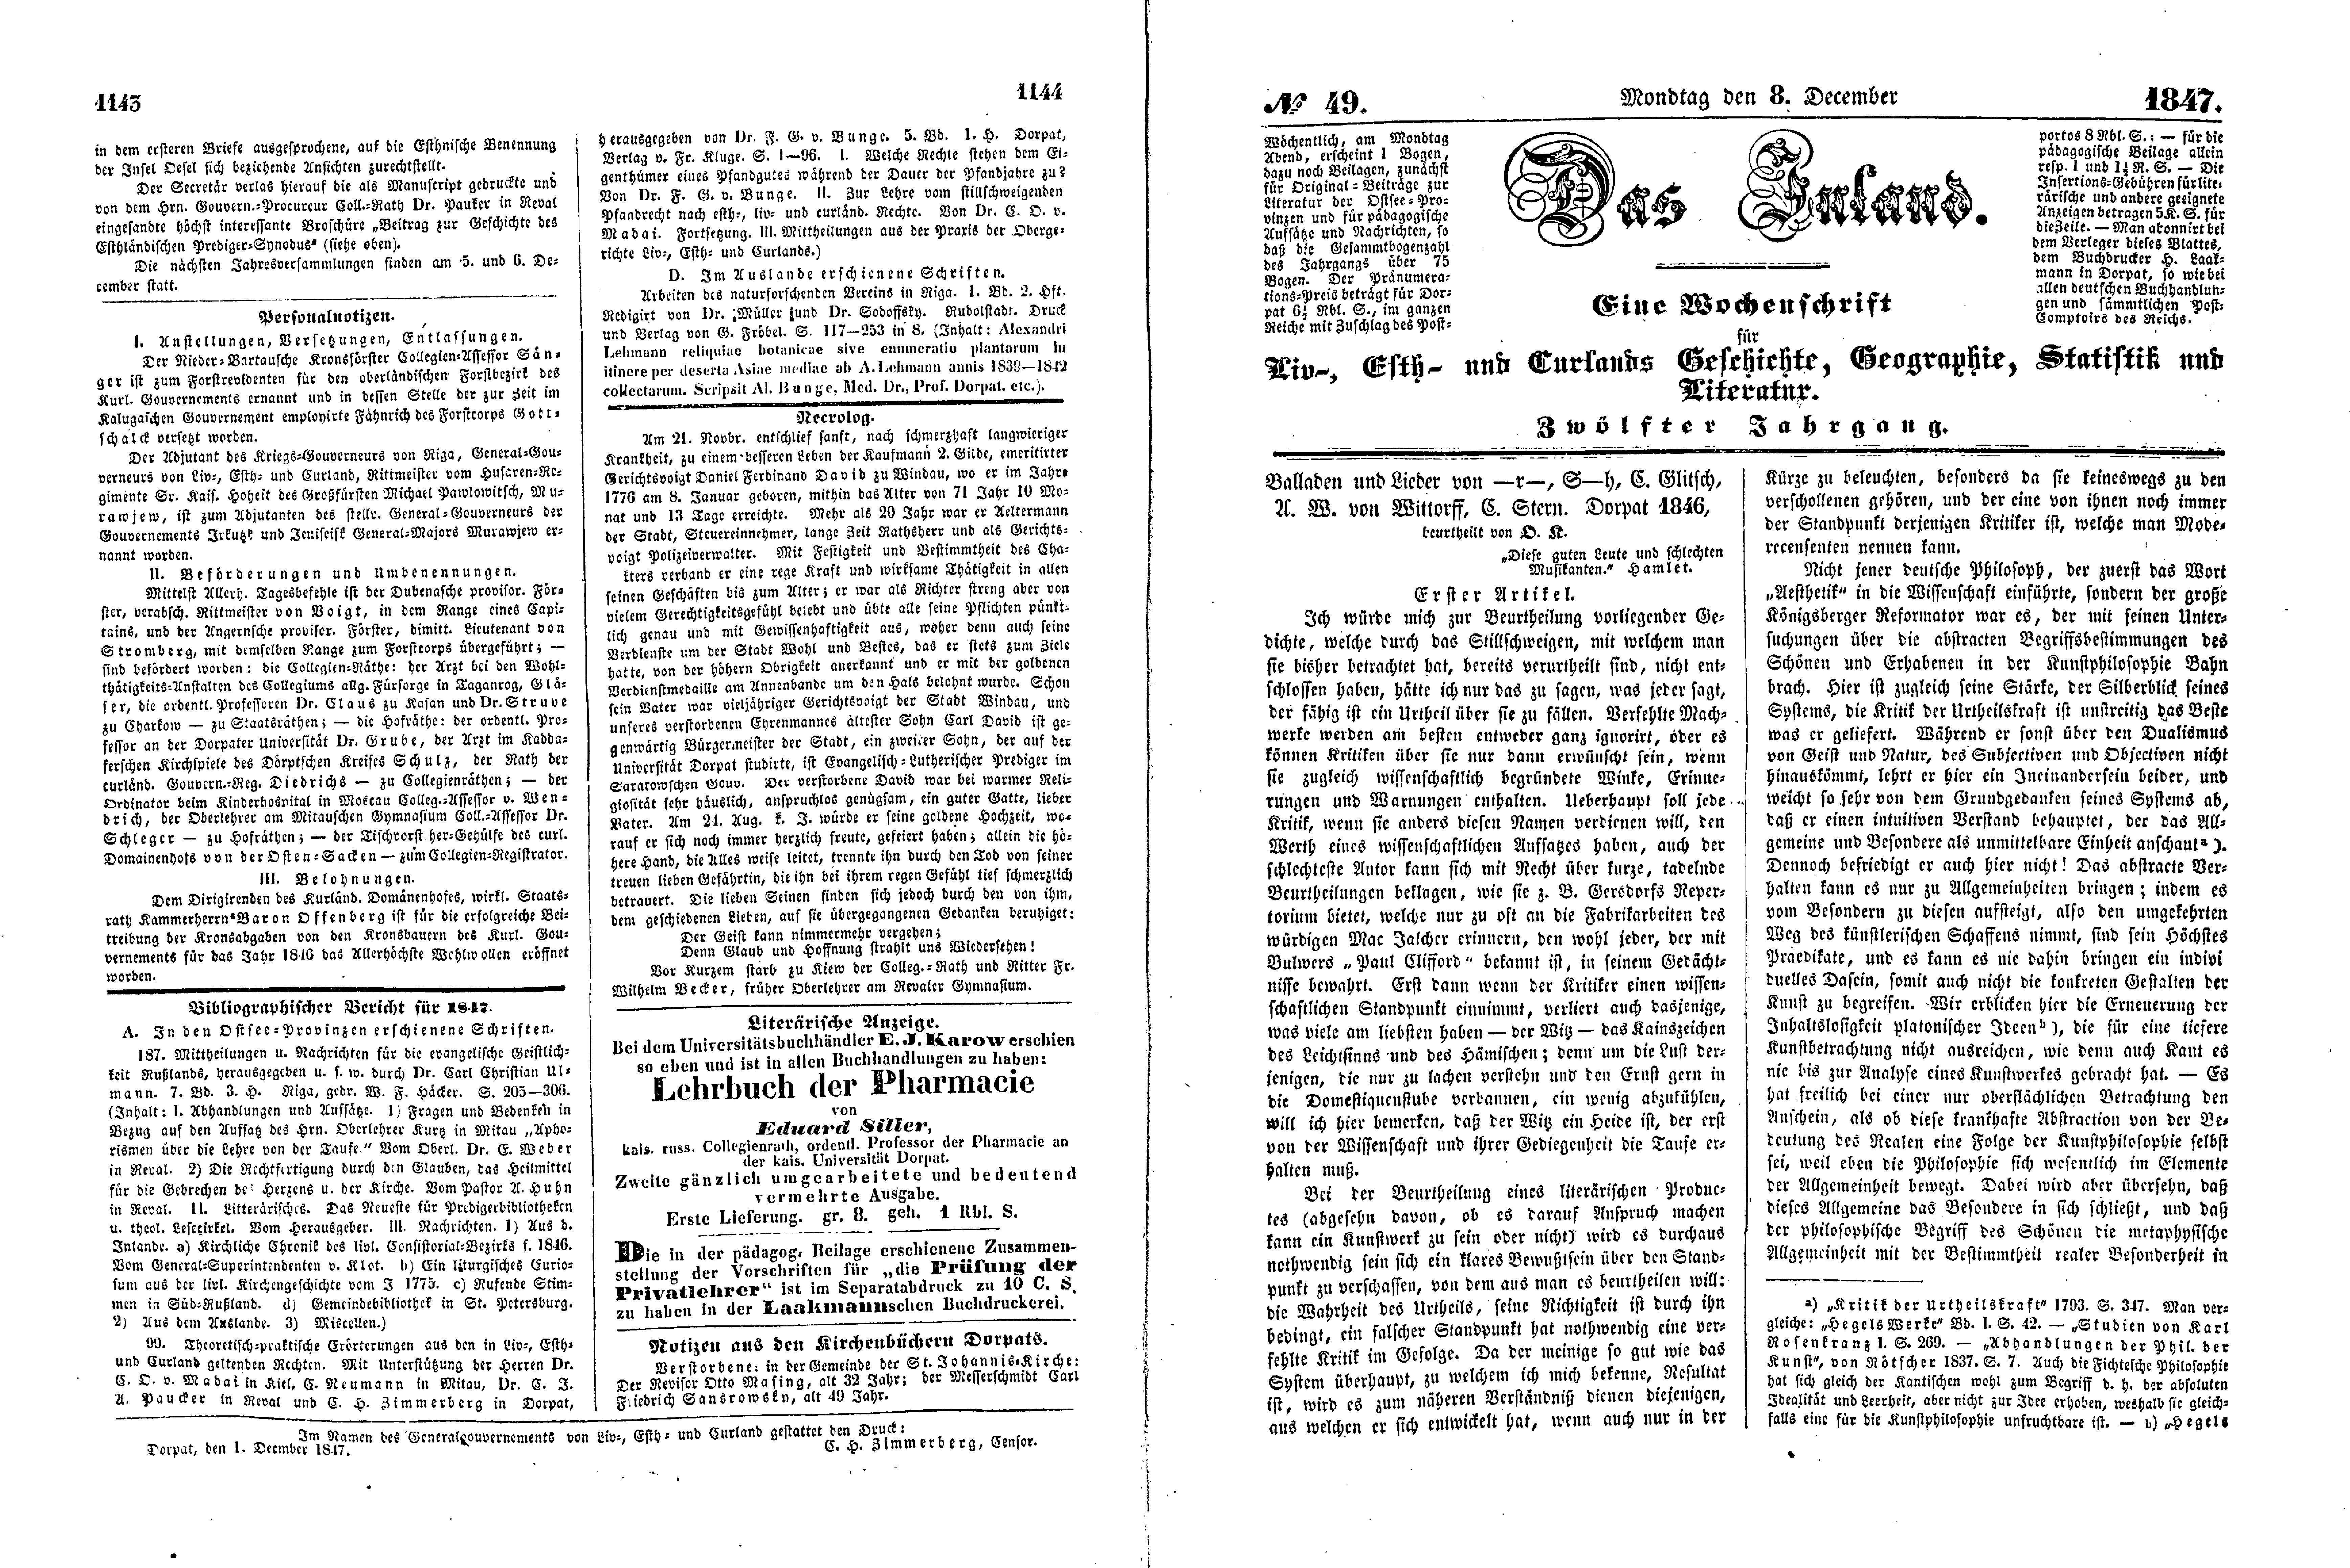 Balladen und Lieder von -r-, S-h, C. Glitsch, A. W. von Wittorff, C. Stern [1] (1847) | 1. (1143-1146) Põhitekst